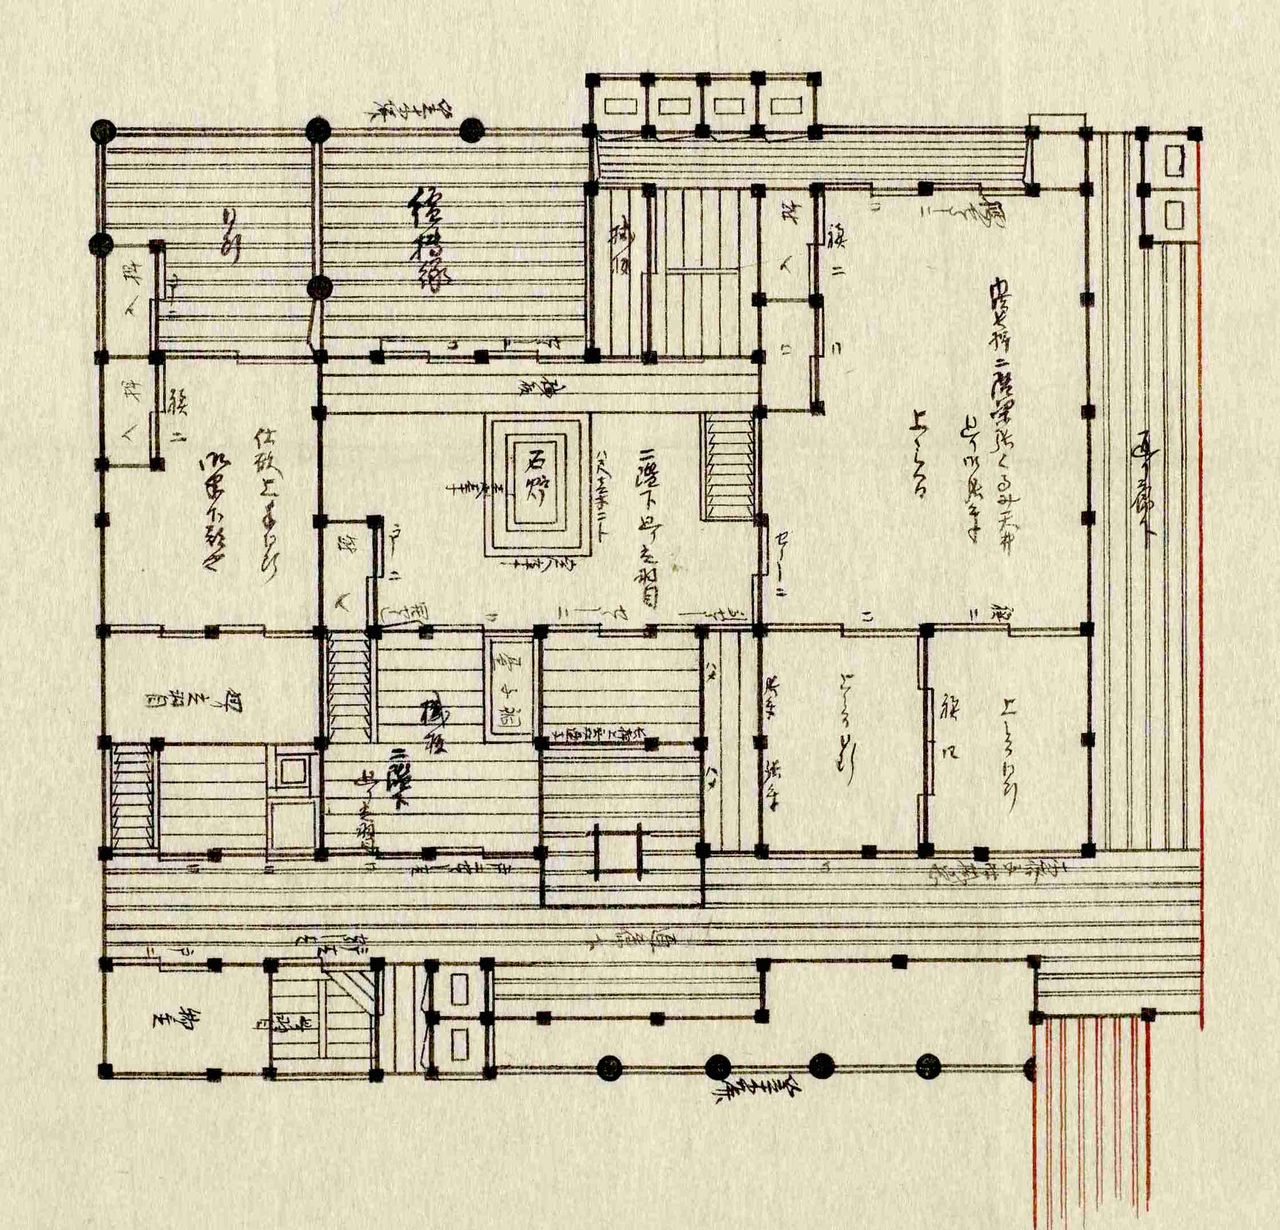 御半下部屋地繪圖は、御末たちが居住する雑居部屋。推測だが、おそらくこの部屋で十数人が共同生活を送っていたと考えられる。東京都立中央図書館特別文庫室所蔵